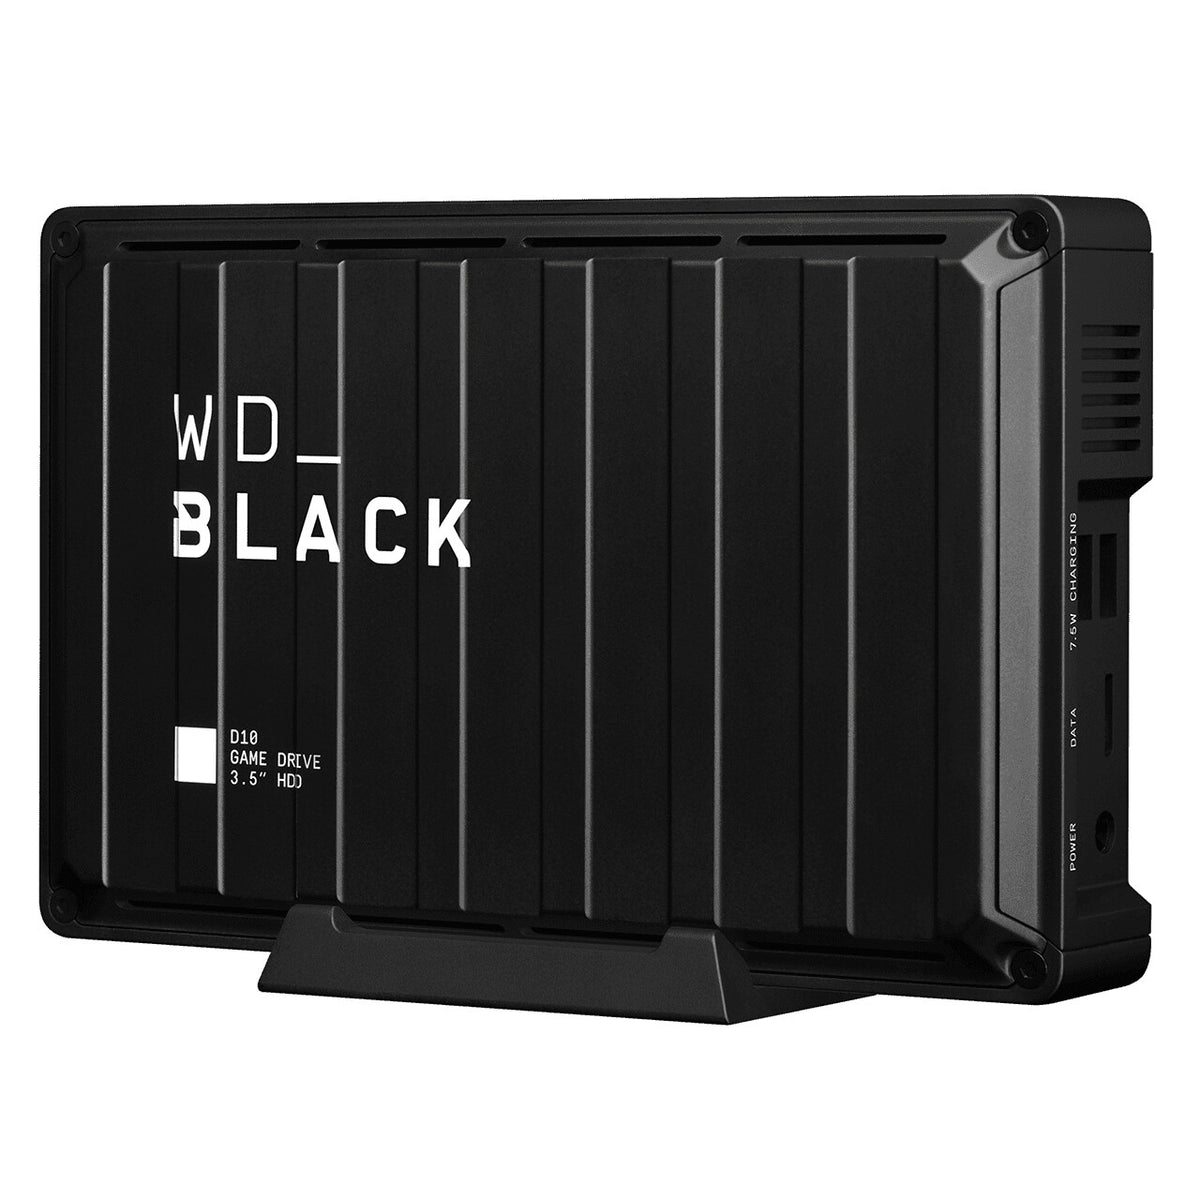 Western Digital WD_BLACK D10 - External hard drive - 8 TB